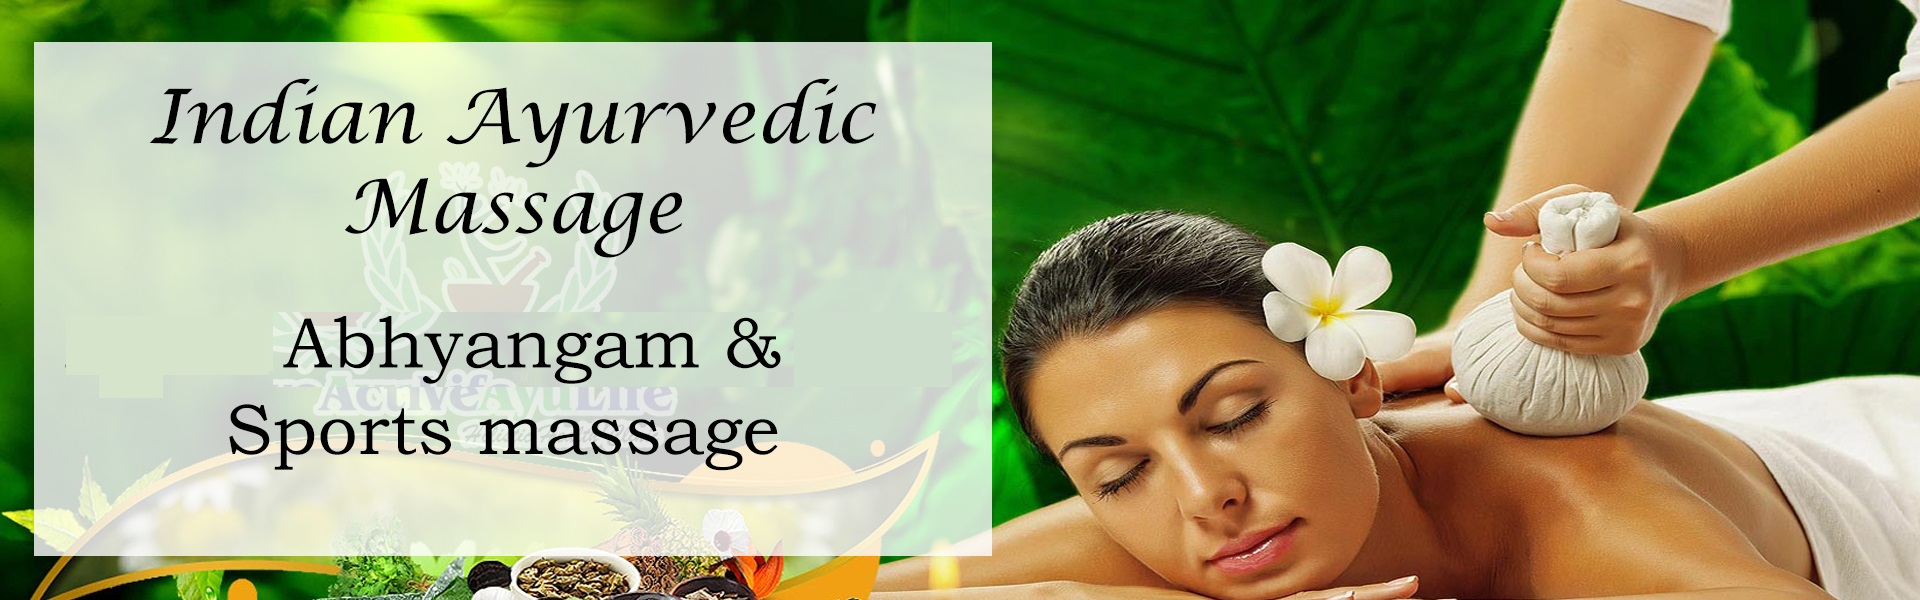 Indian Ayurvedic Massage 